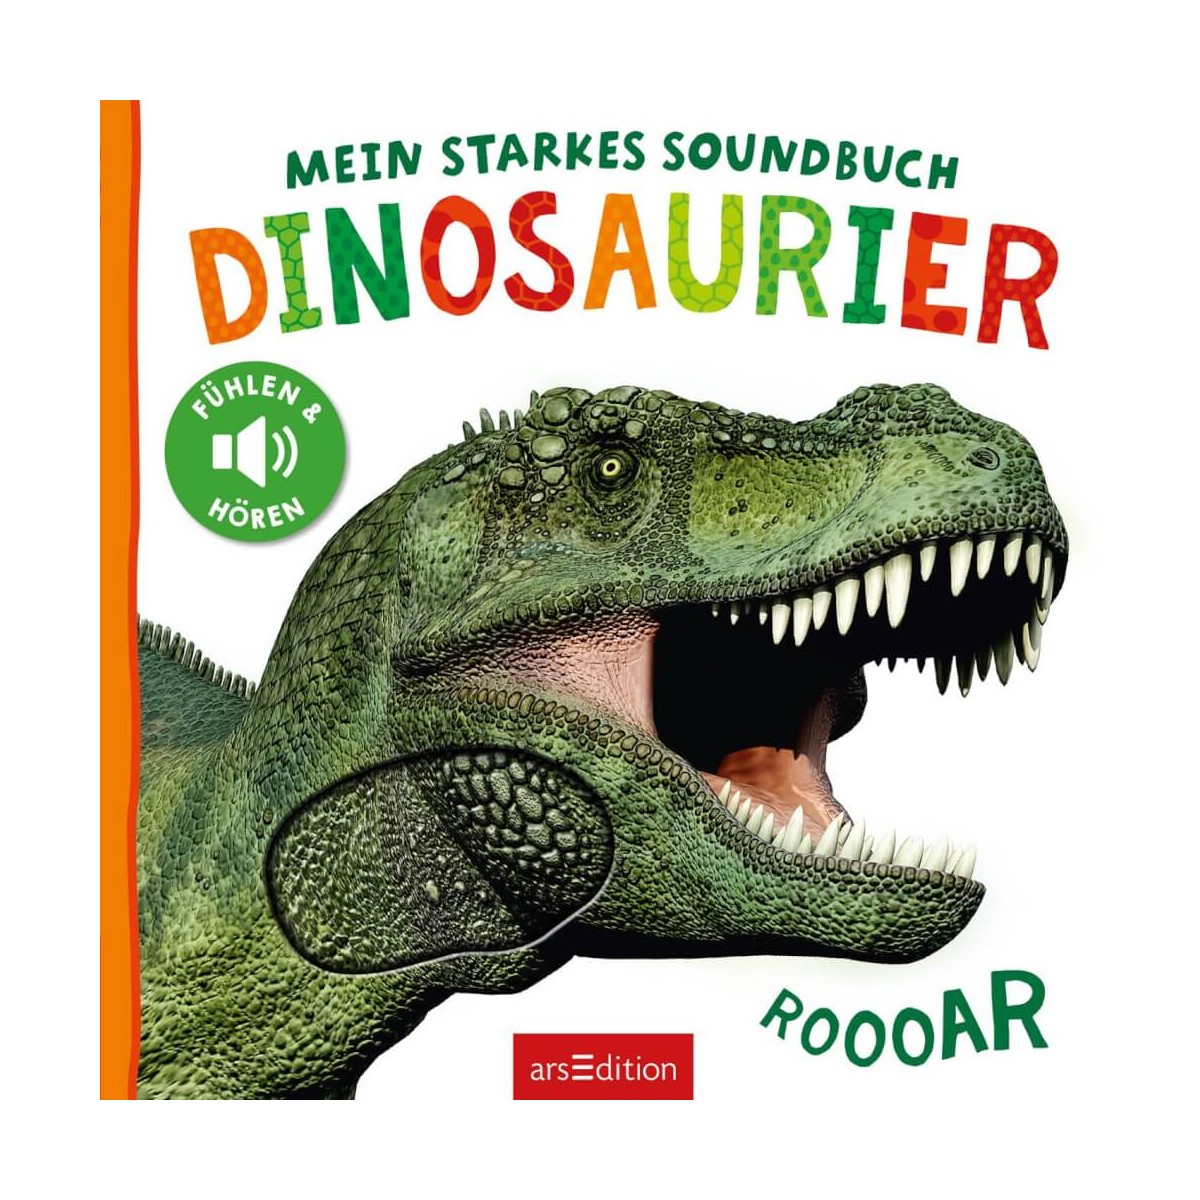 Starkes Soundbuch - Dinosau.